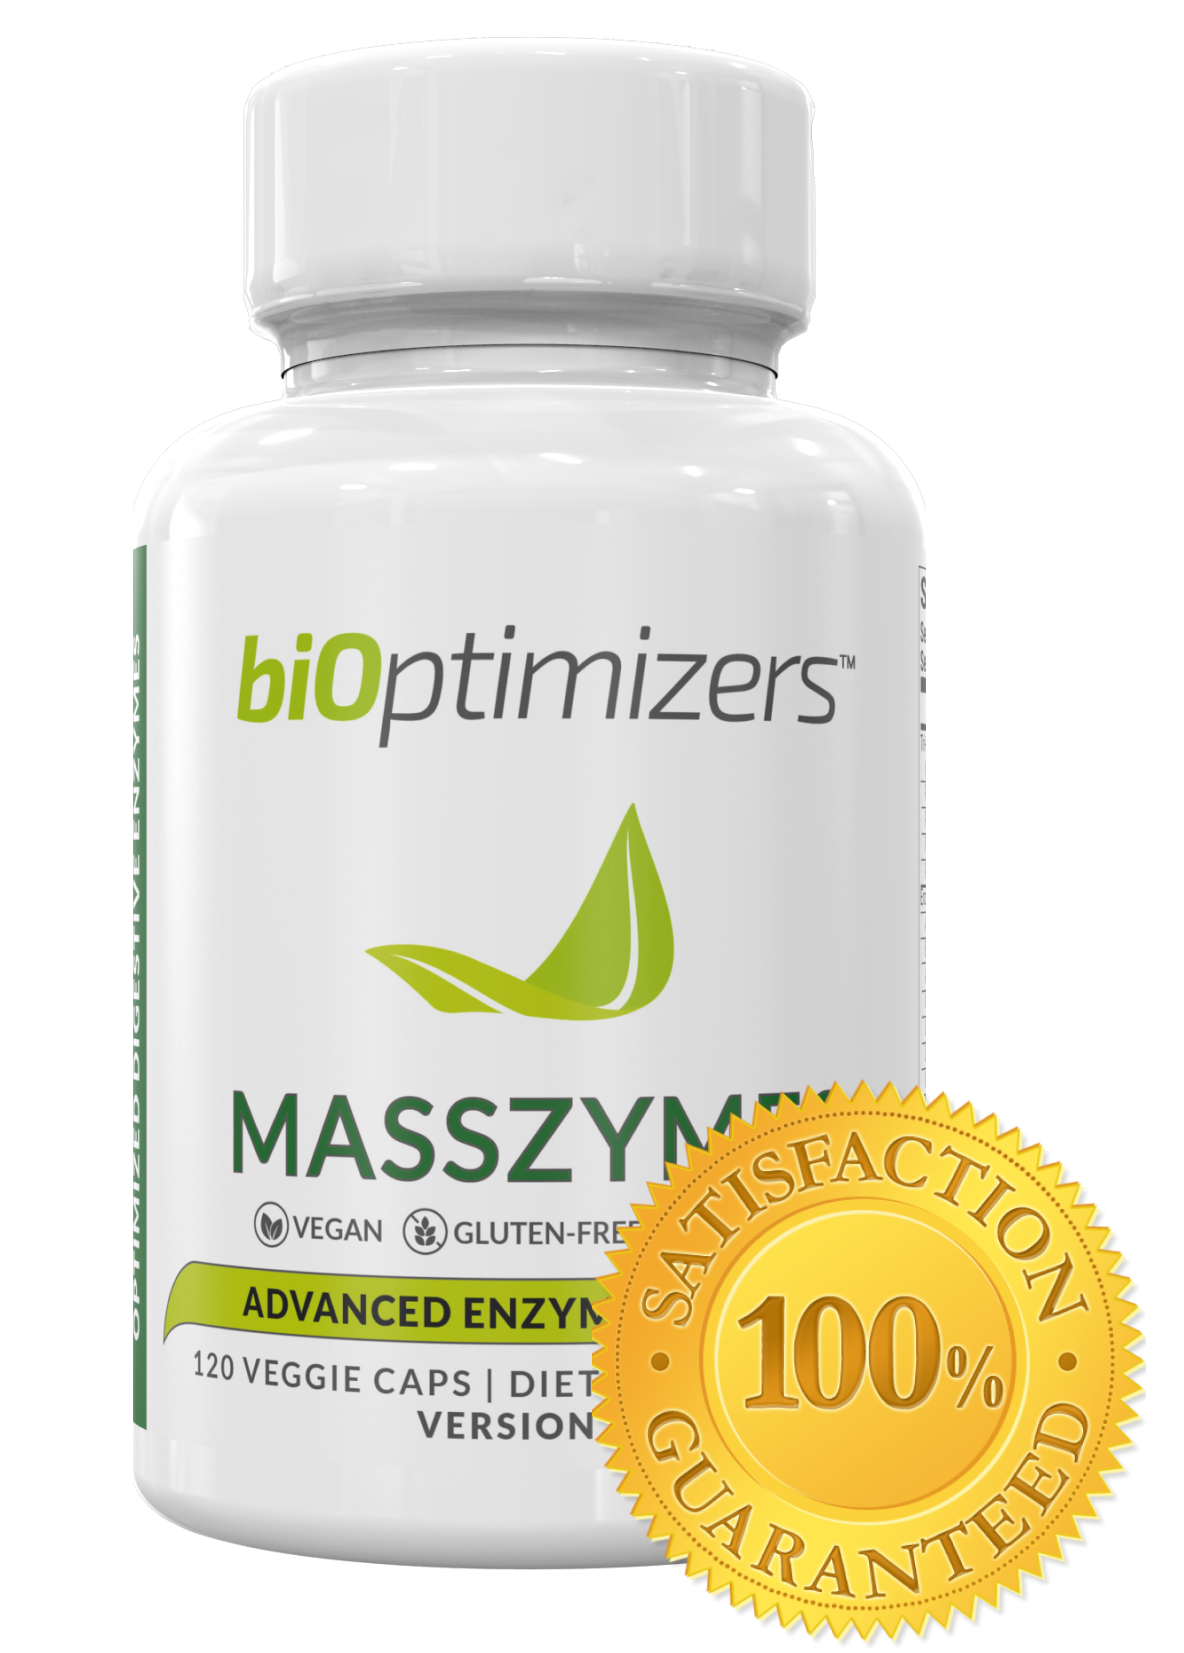 Bioptimizers Body Fat Loss